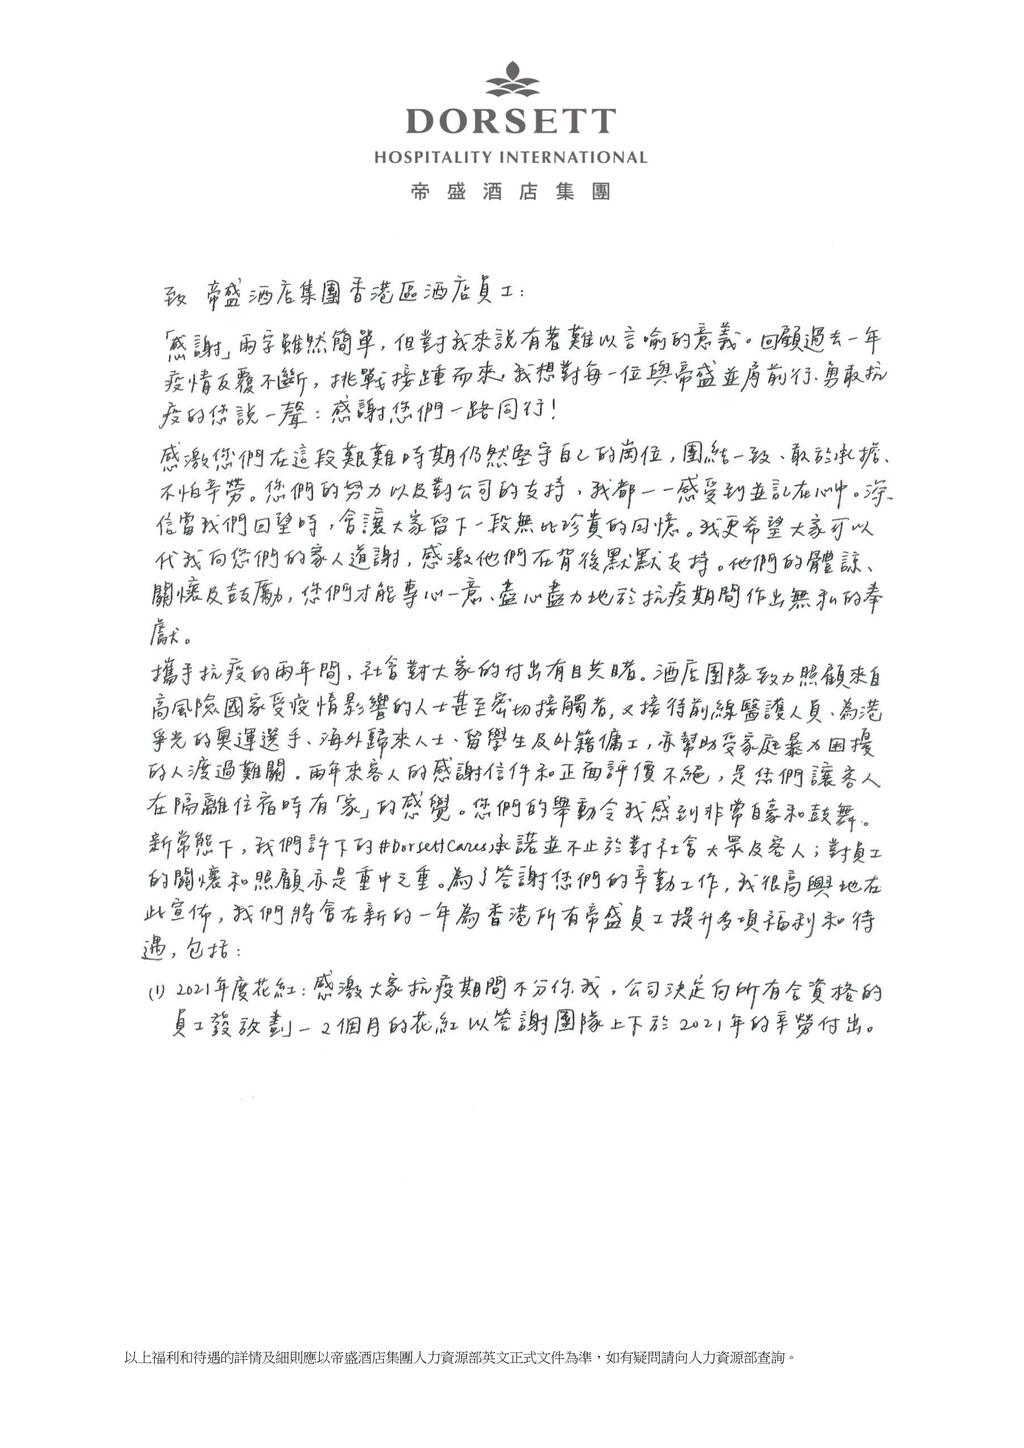 邱詠筠去年也以手寫信形式宣佈為帝盛酒店全體員工加薪